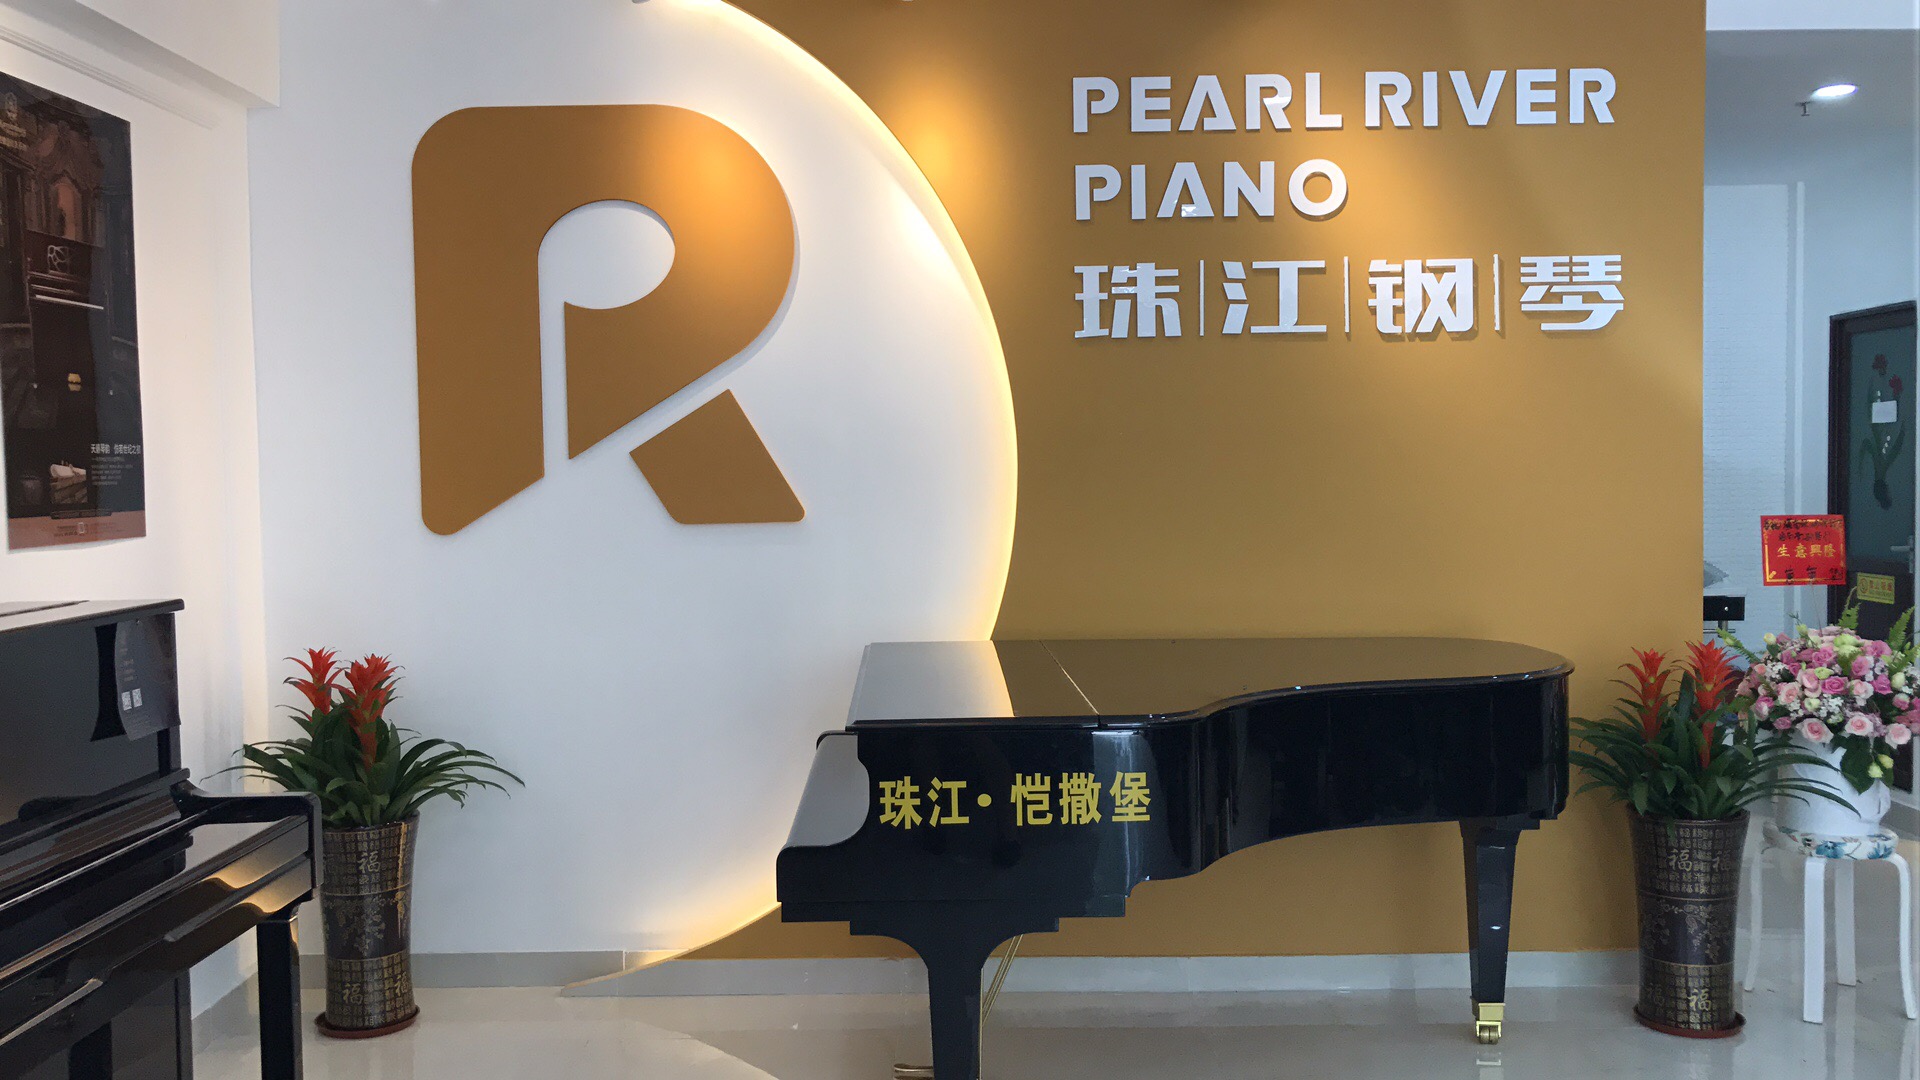 海口珠江钢琴专卖店